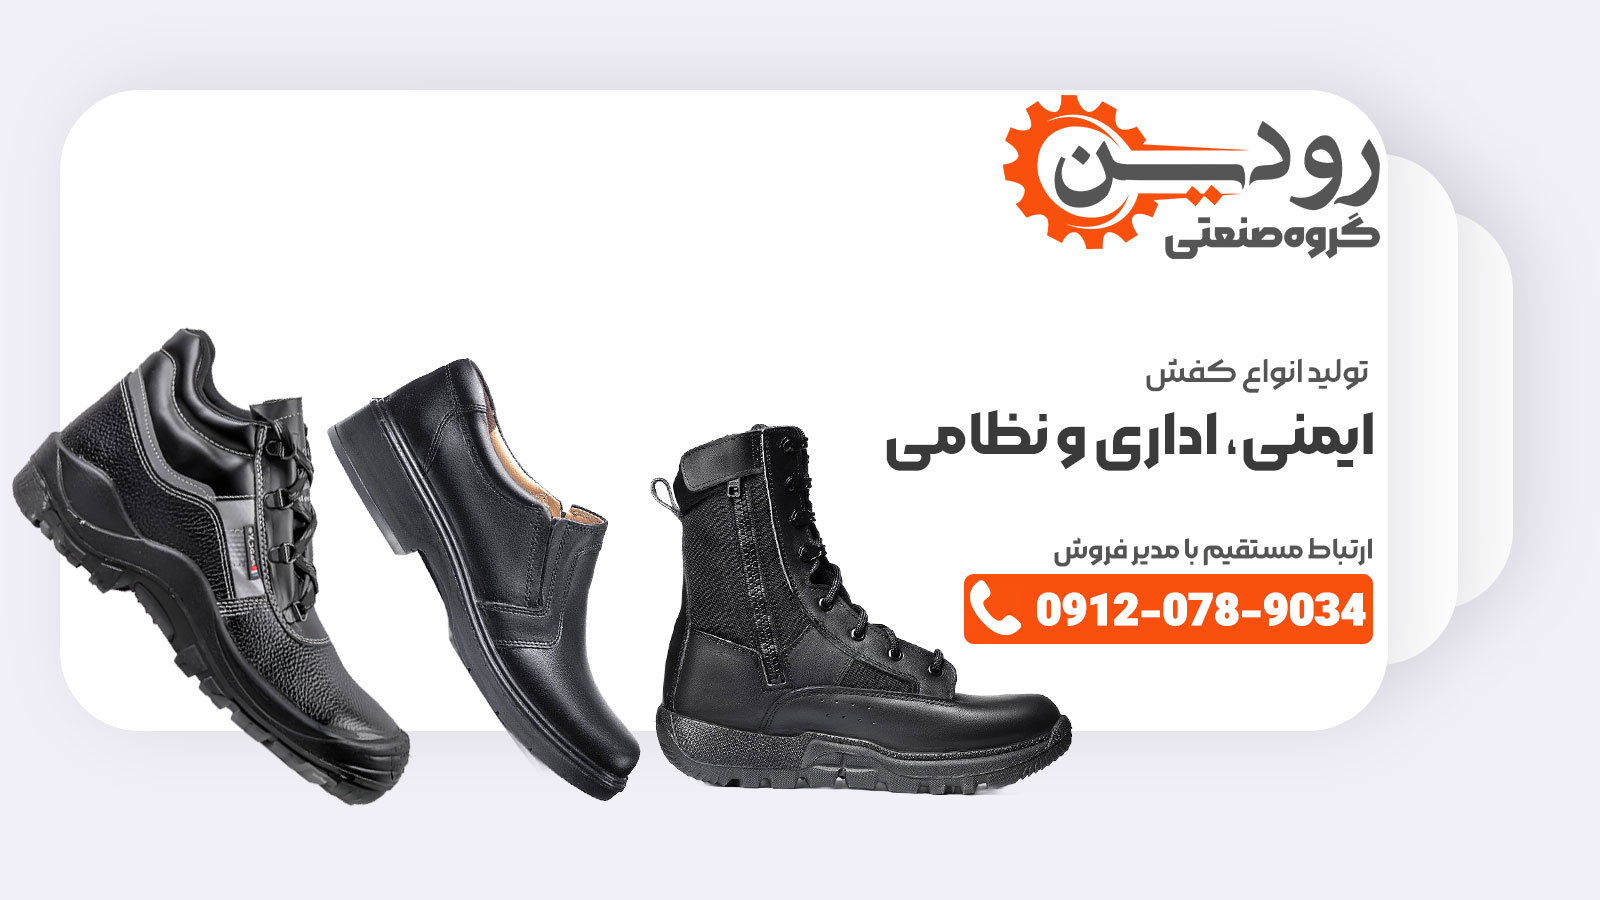 کارخانه تولید کفش ایمنی، میتواند کفش های نظامی و اداری را هم به تولید برساند.